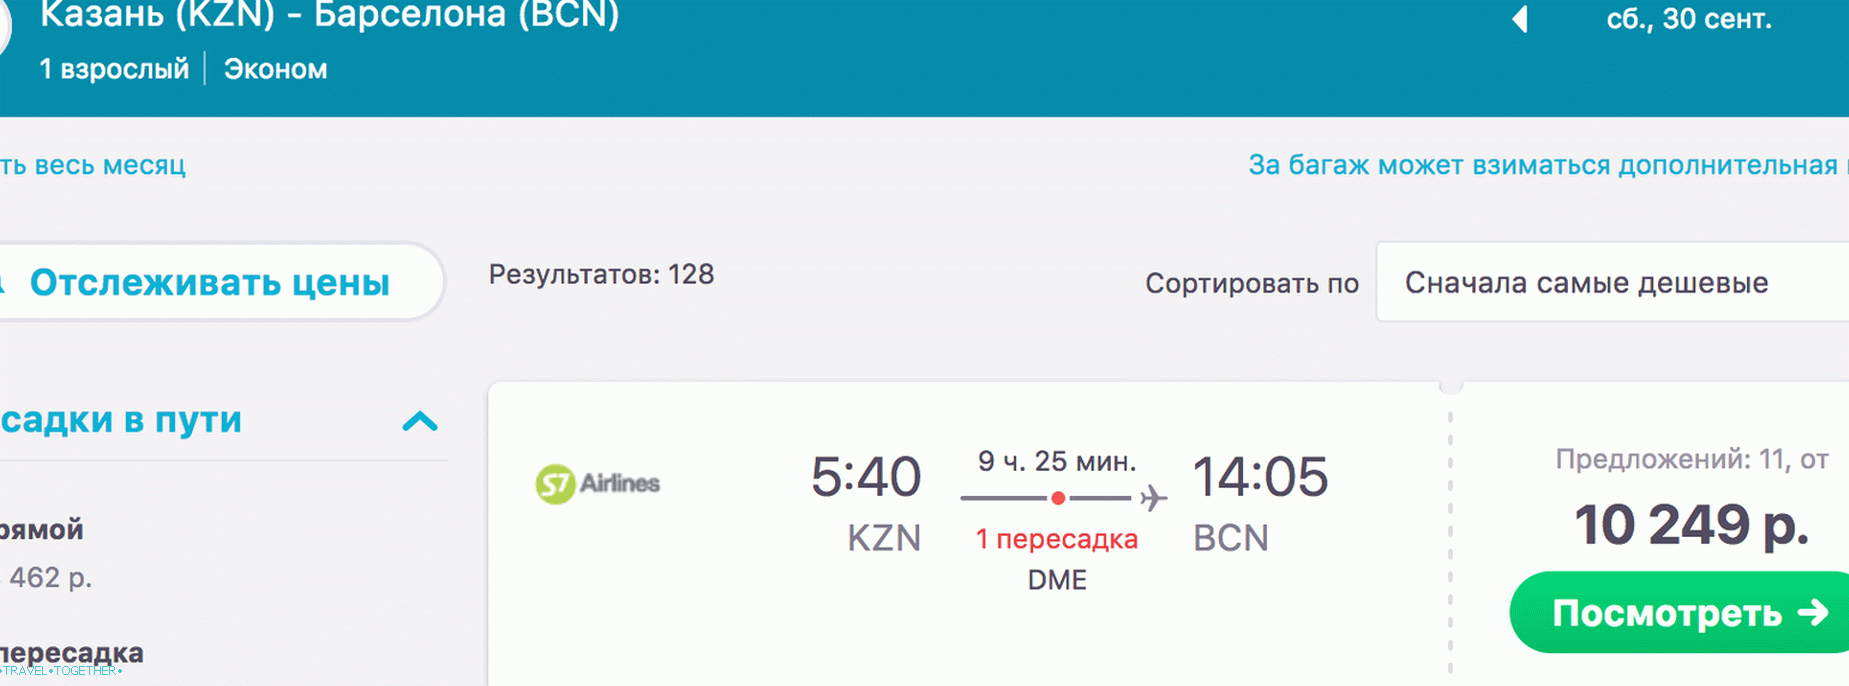 Kazan-Barcelona,   30. september - 10.249 rubljev.